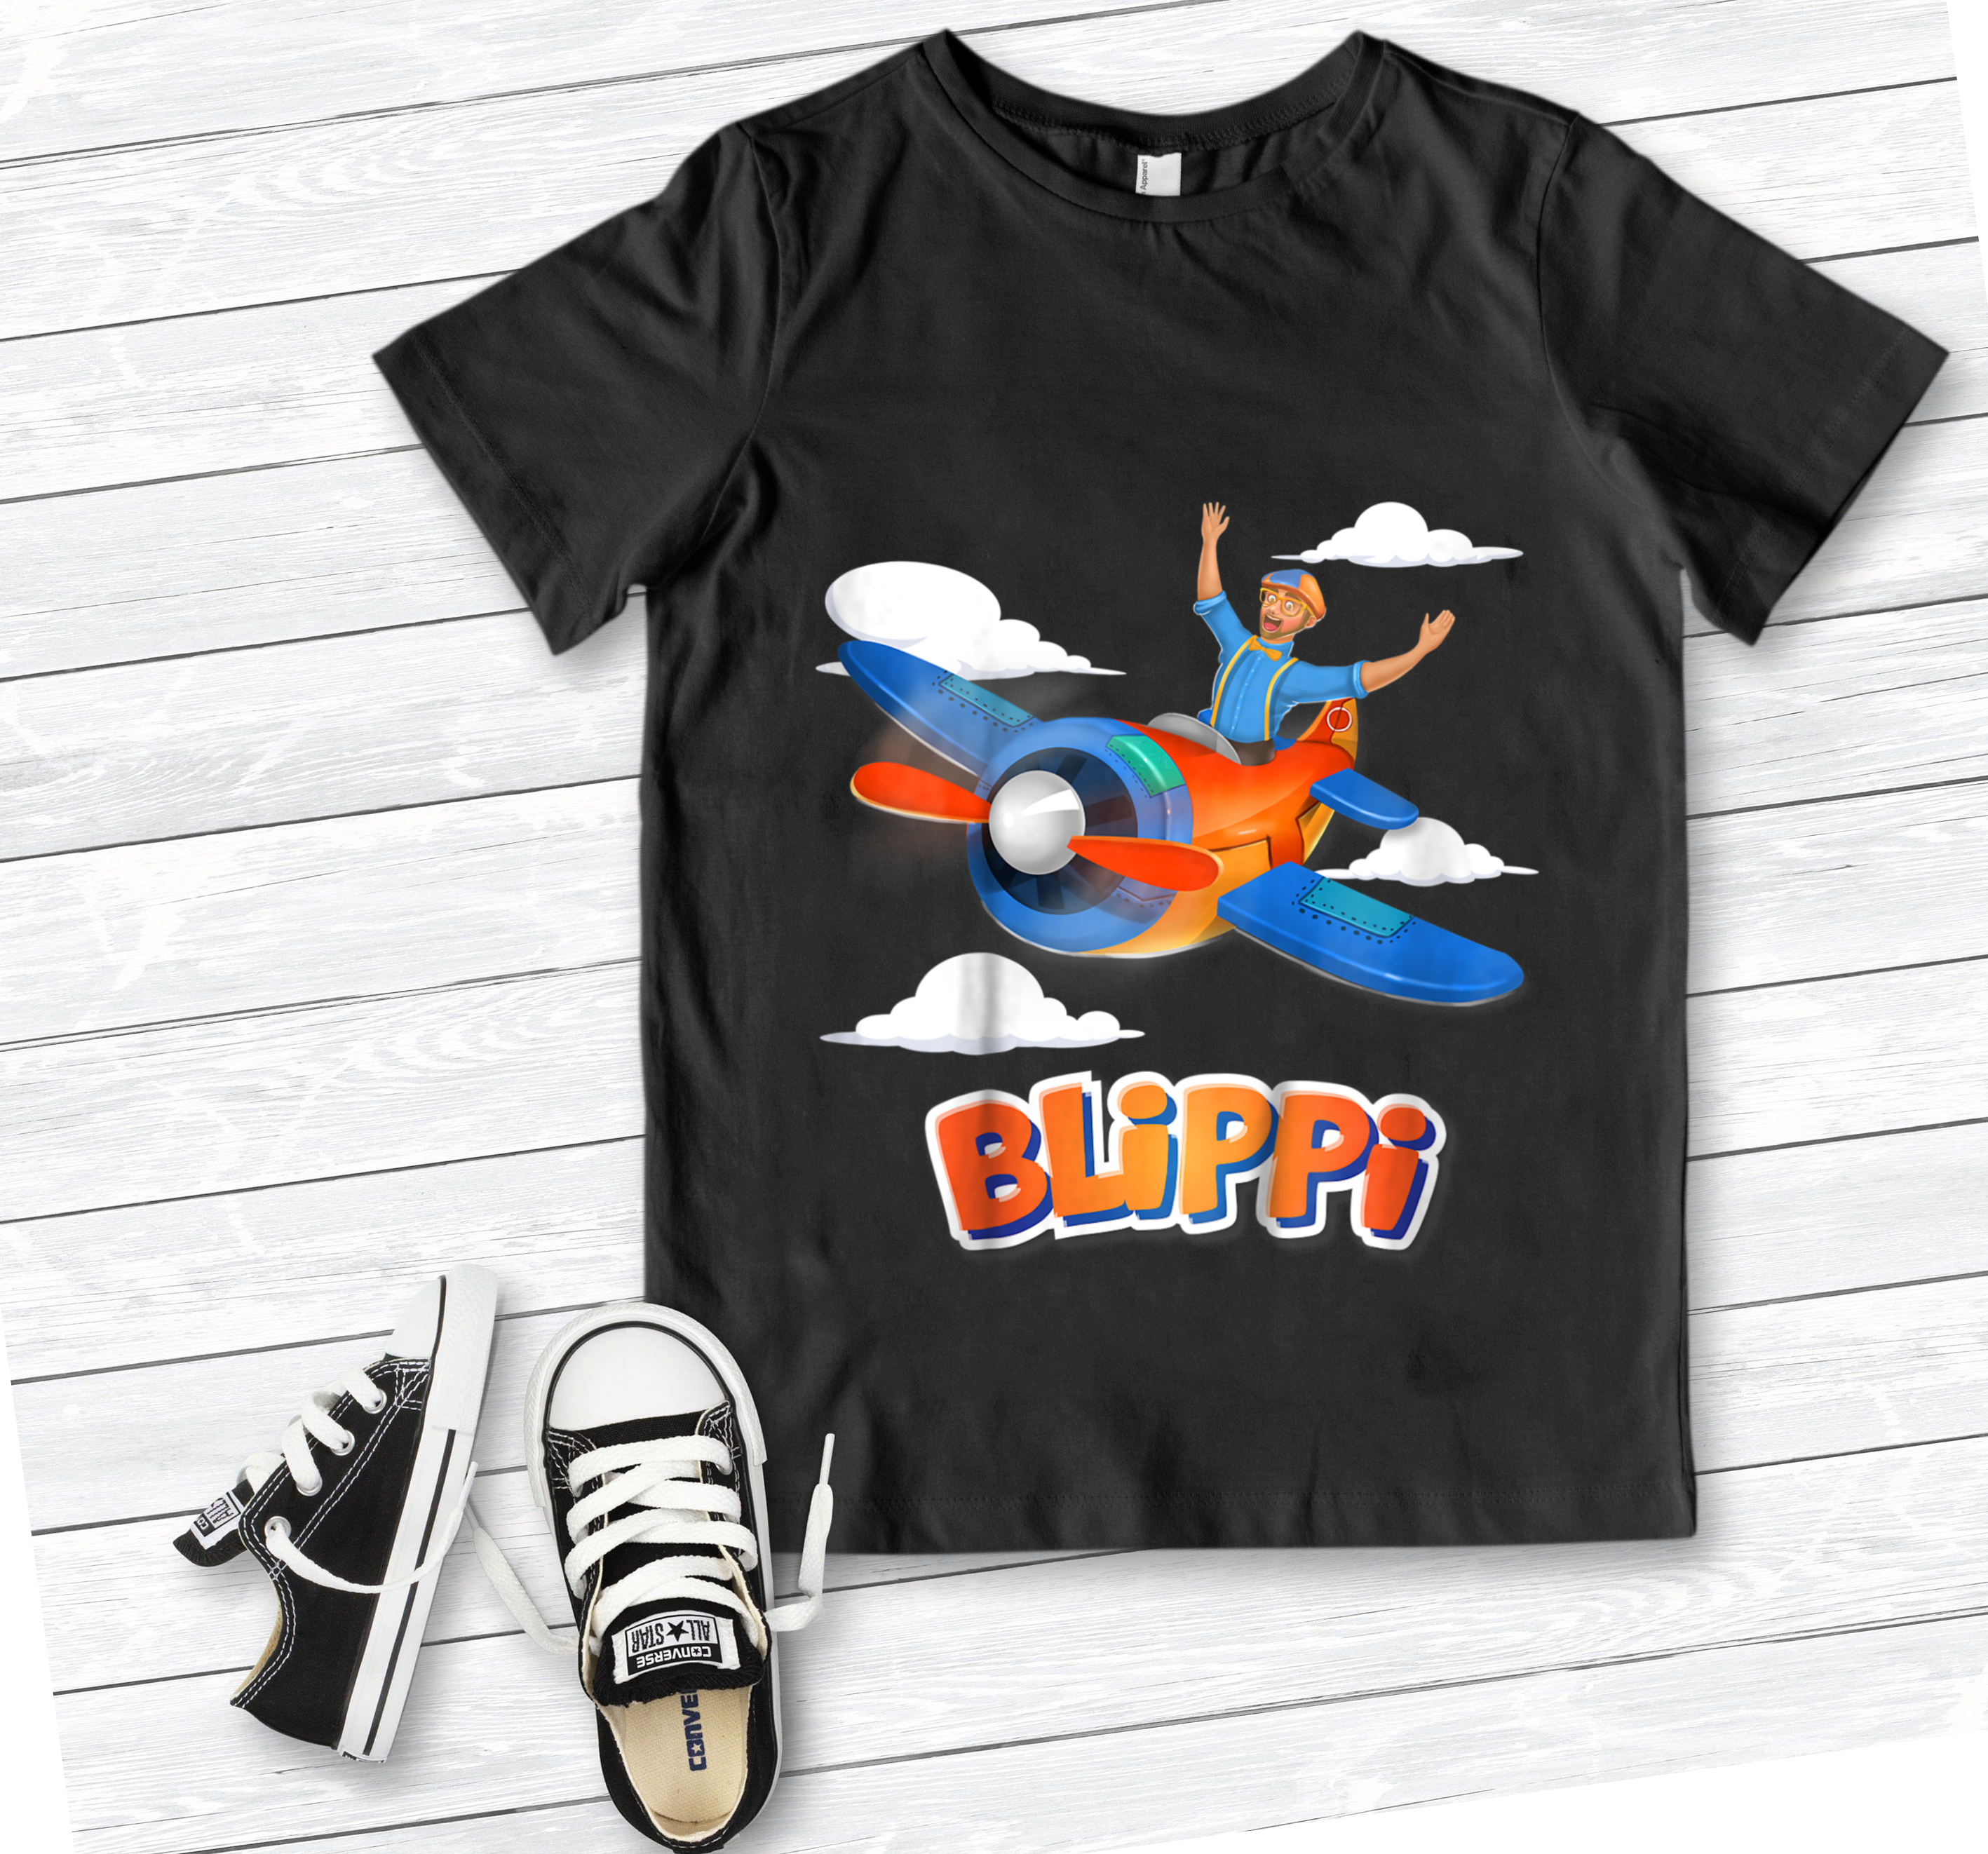 Blippi Airplane T-Shirt for Kids, Blippi Character Shirt, Blippi Fan TShirt